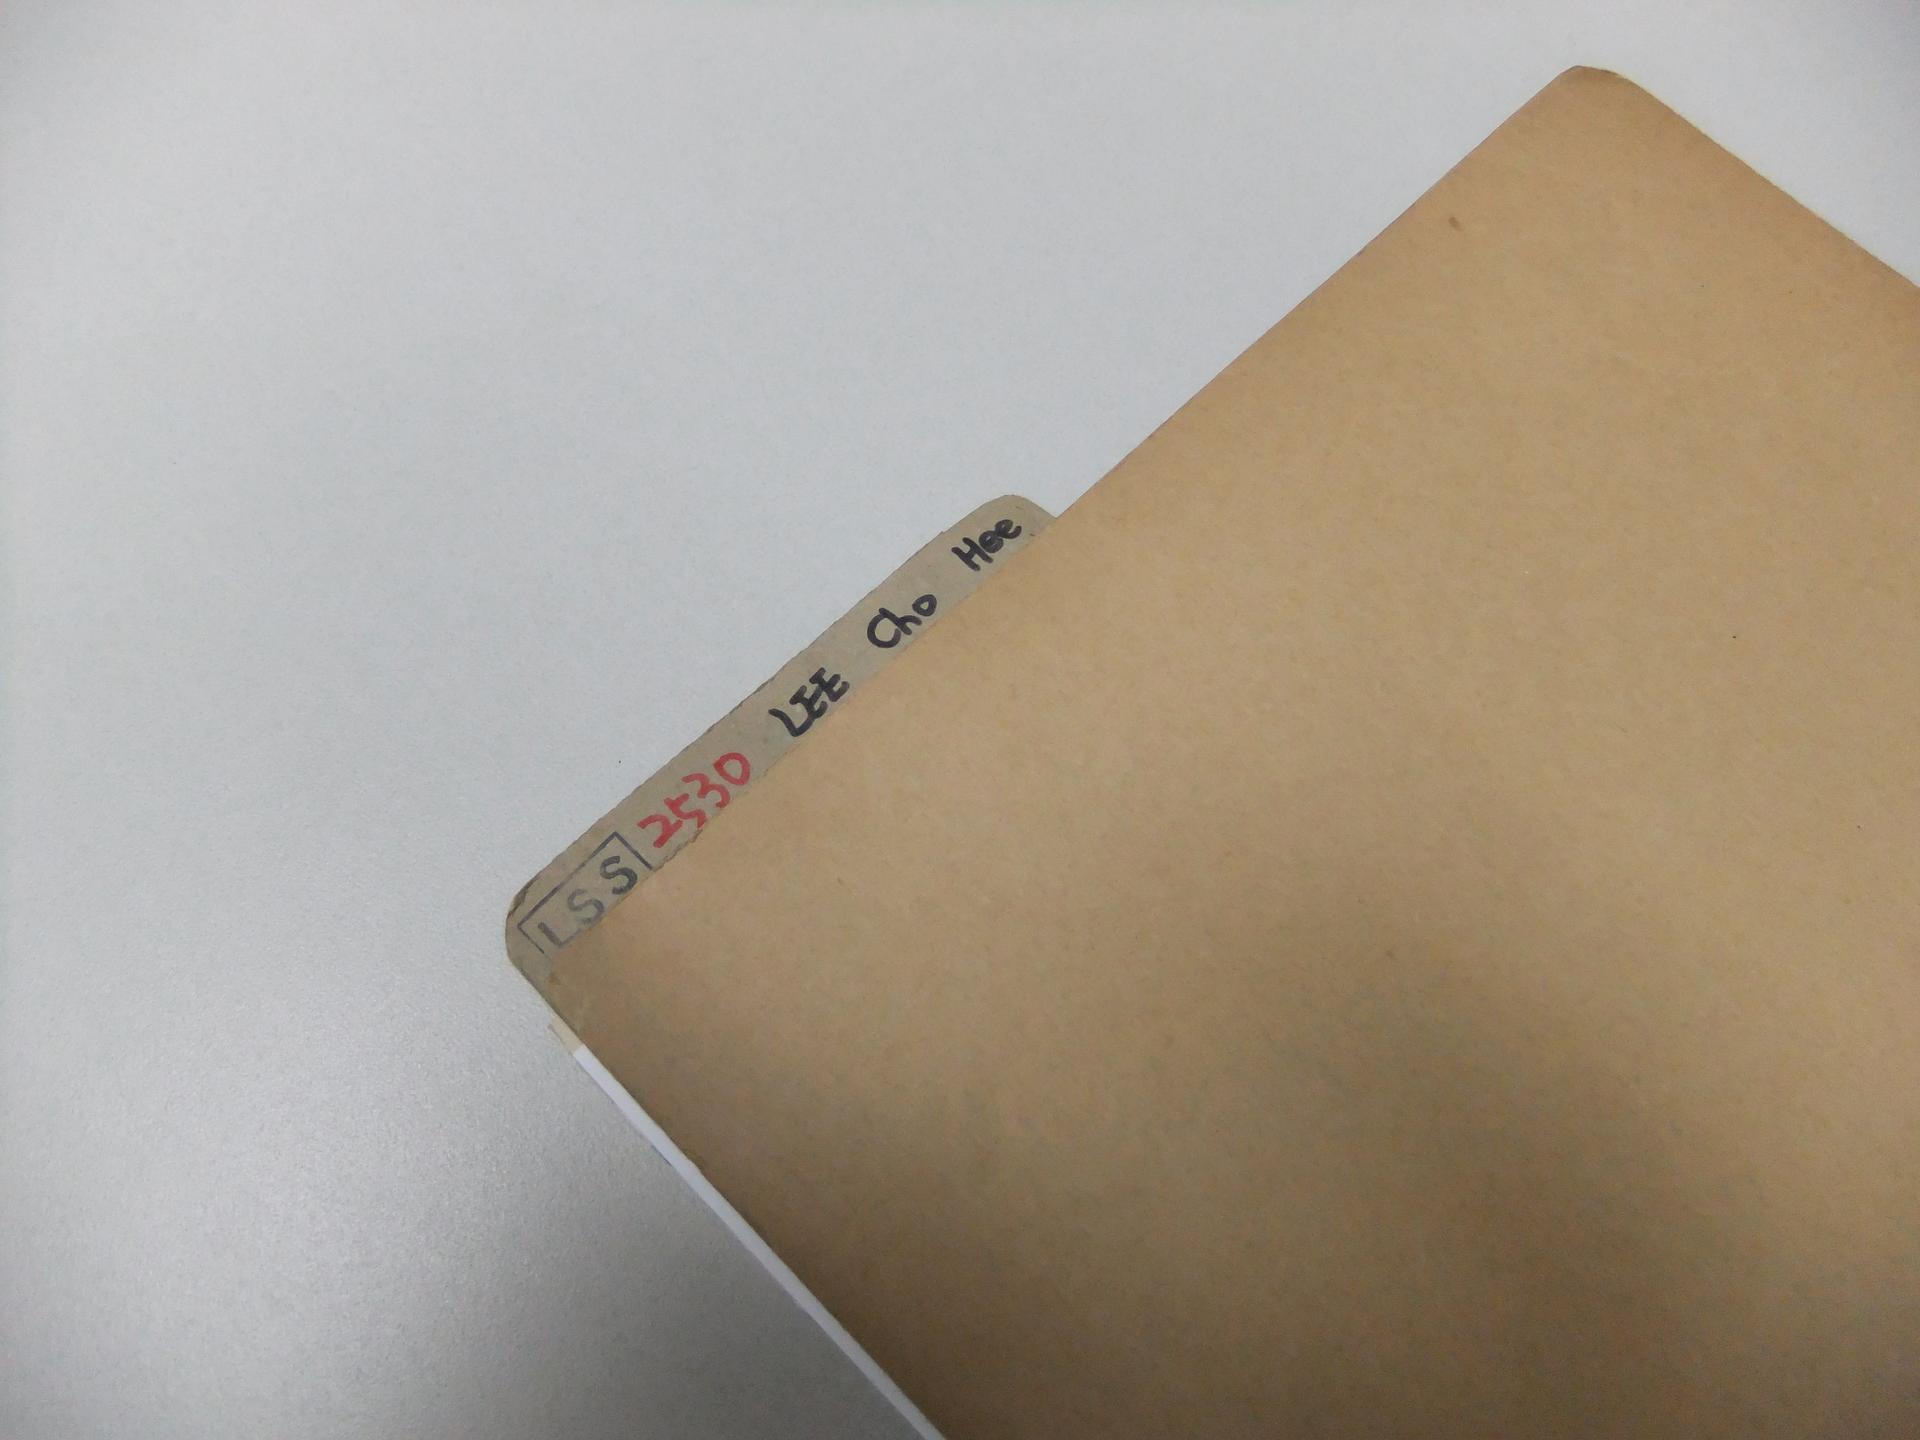 a brown file folder on a desk